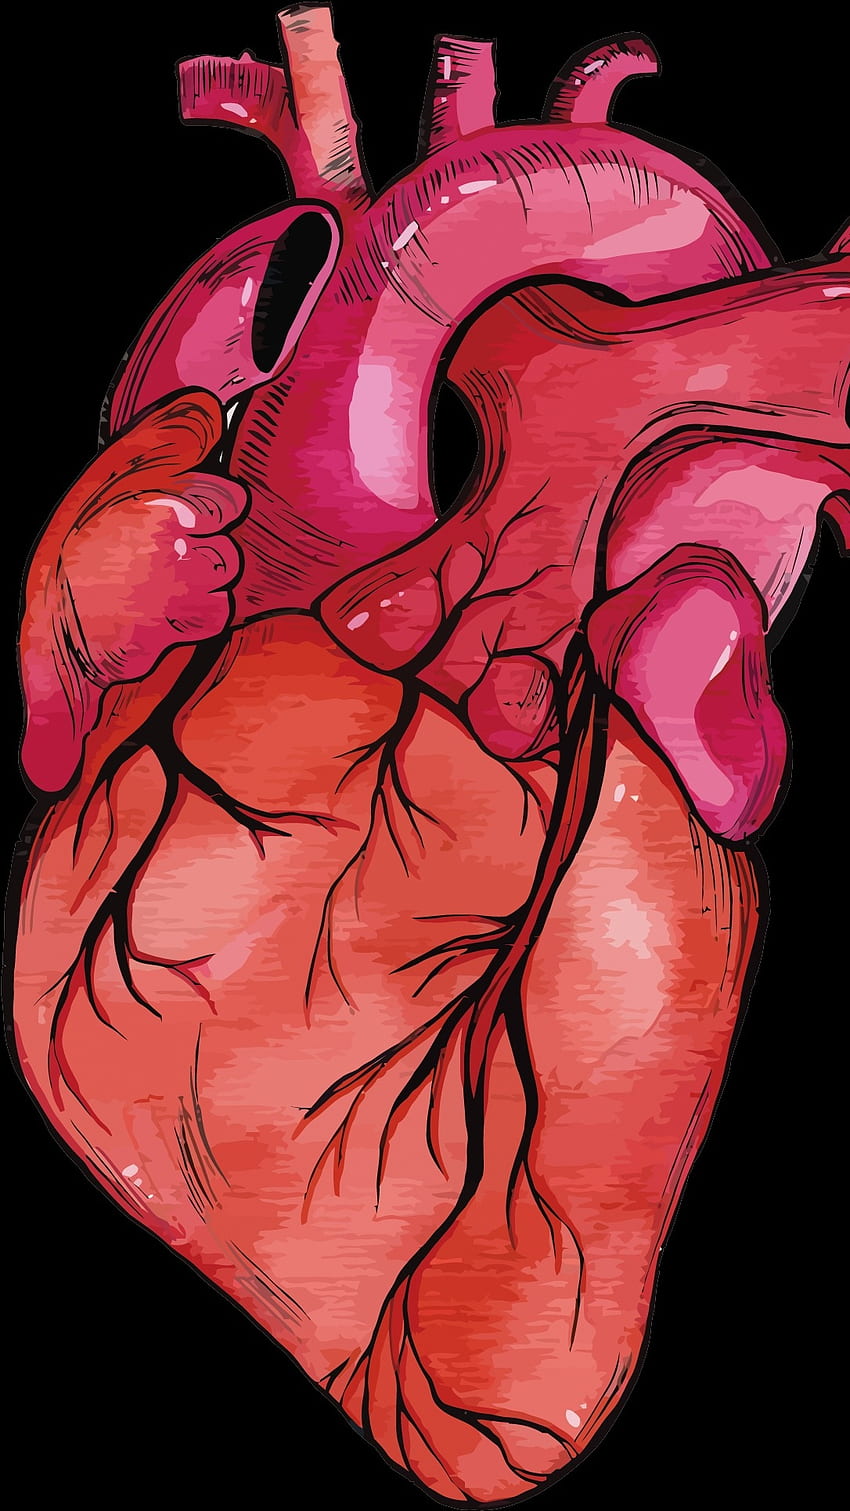 Human Heart Wallpaper Hd